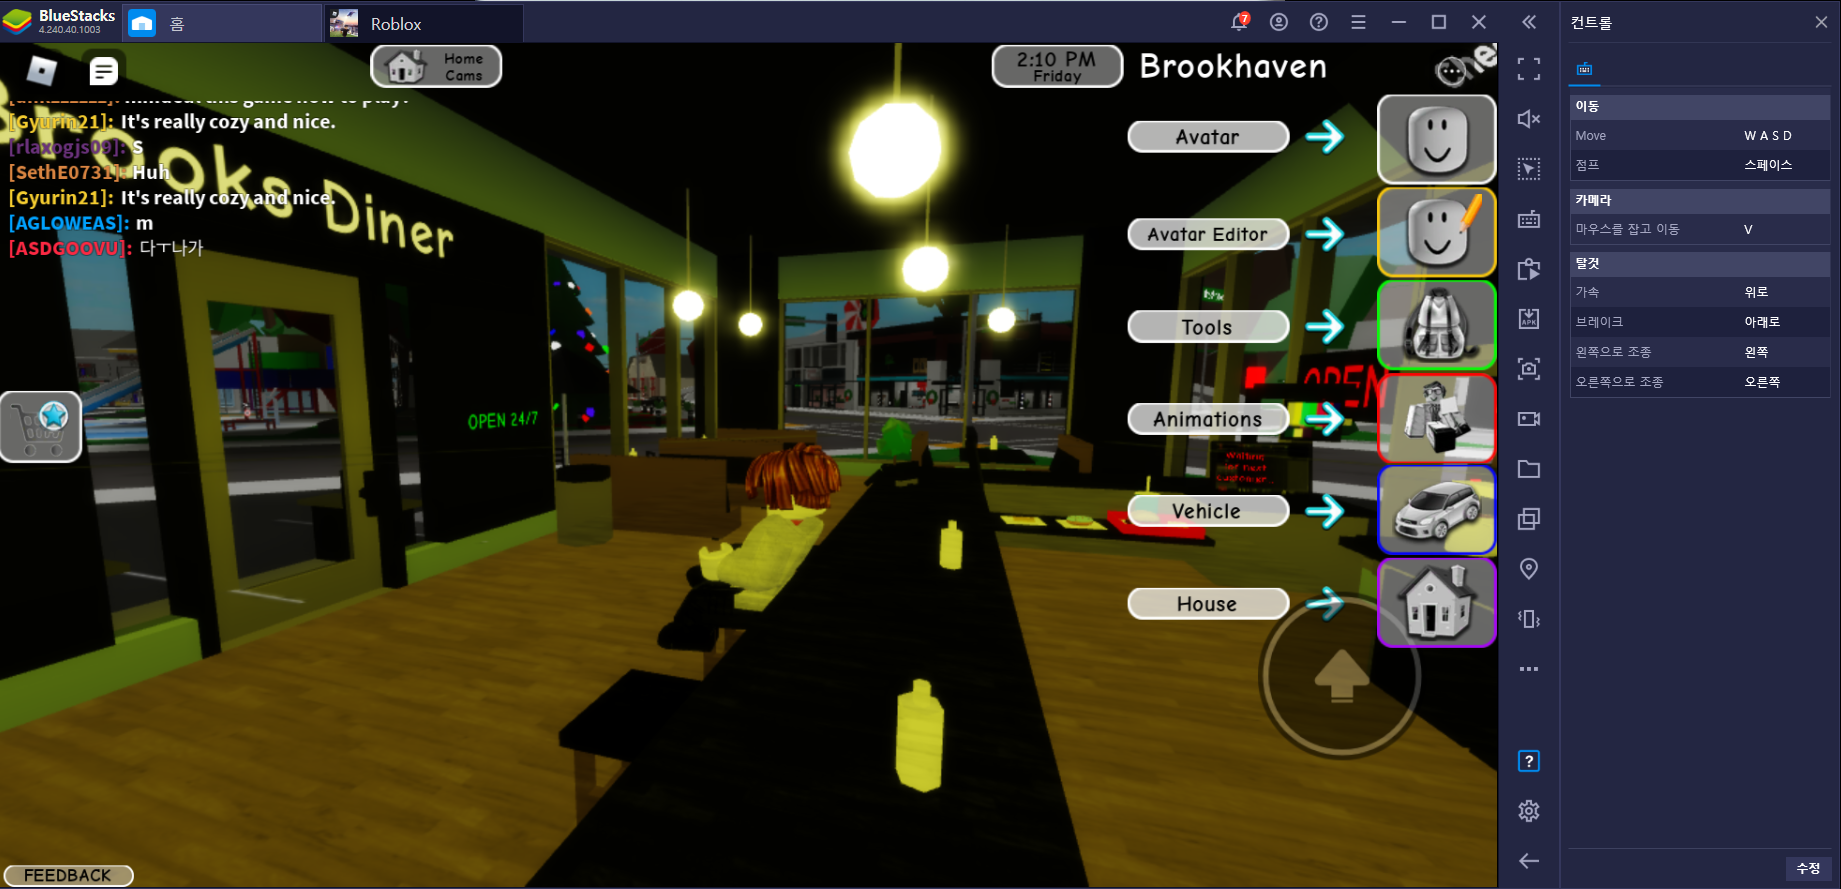 전세계가 사랑하는 오픈월드 게임, 로블록스의 인기 모드 Brookhaven RP를 PC에서 만나보세요!